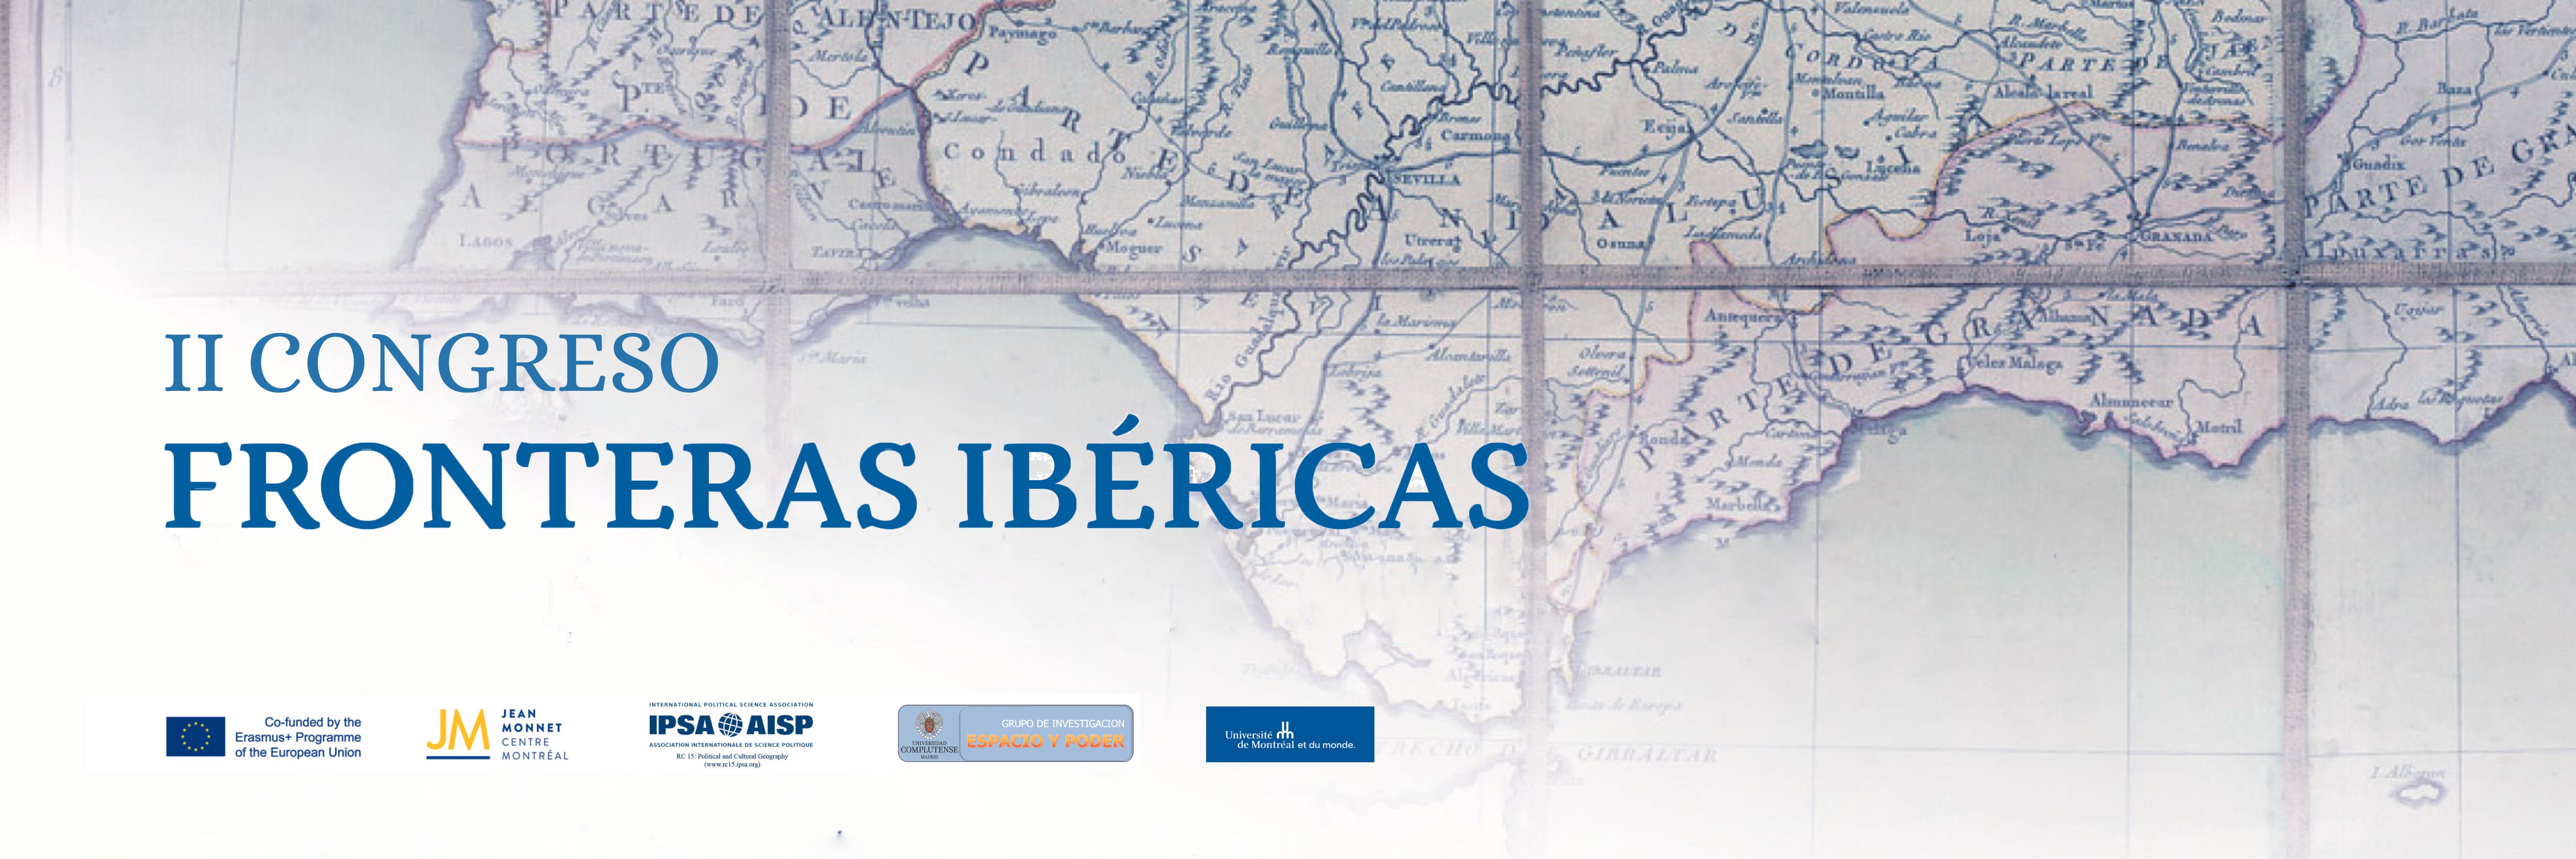 Congreso Fronteras Ibéricas